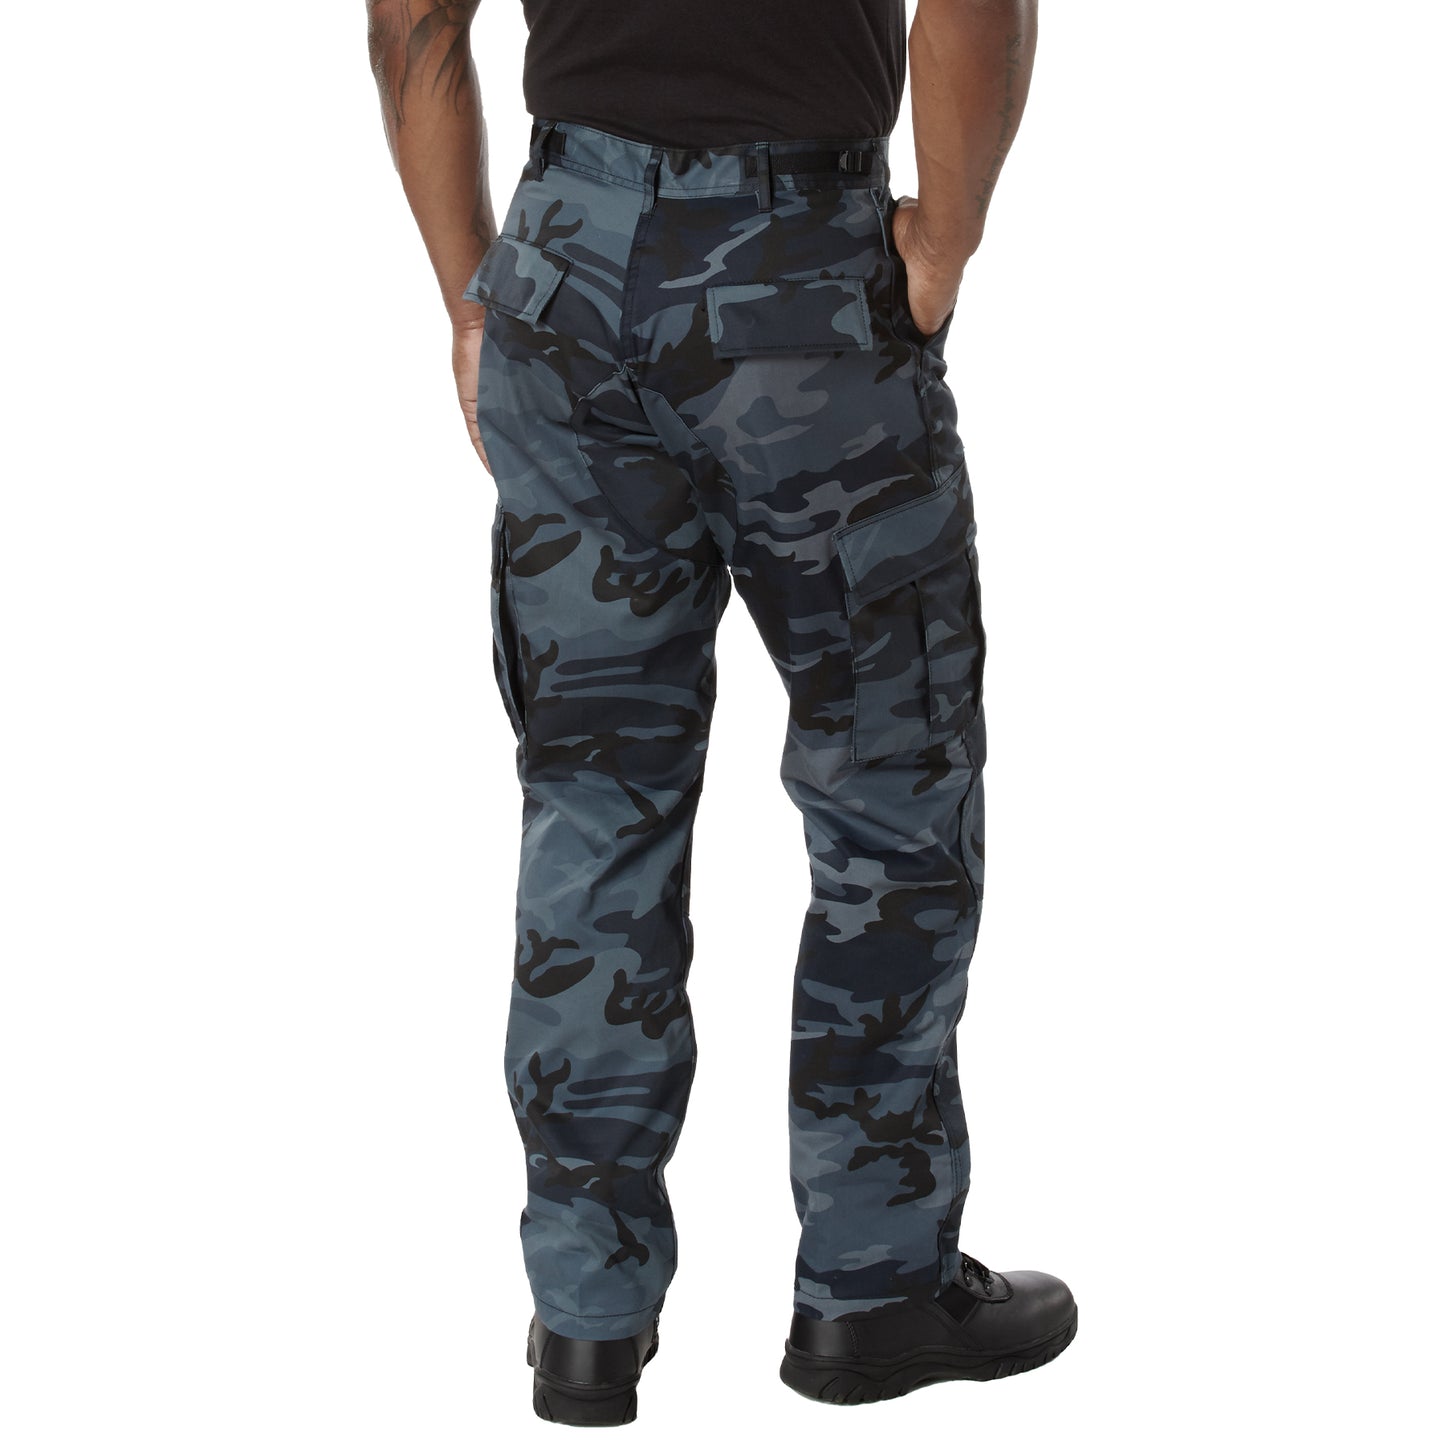 Rothco Color Camo Tactical BDU Pants - Dark Blue Camo